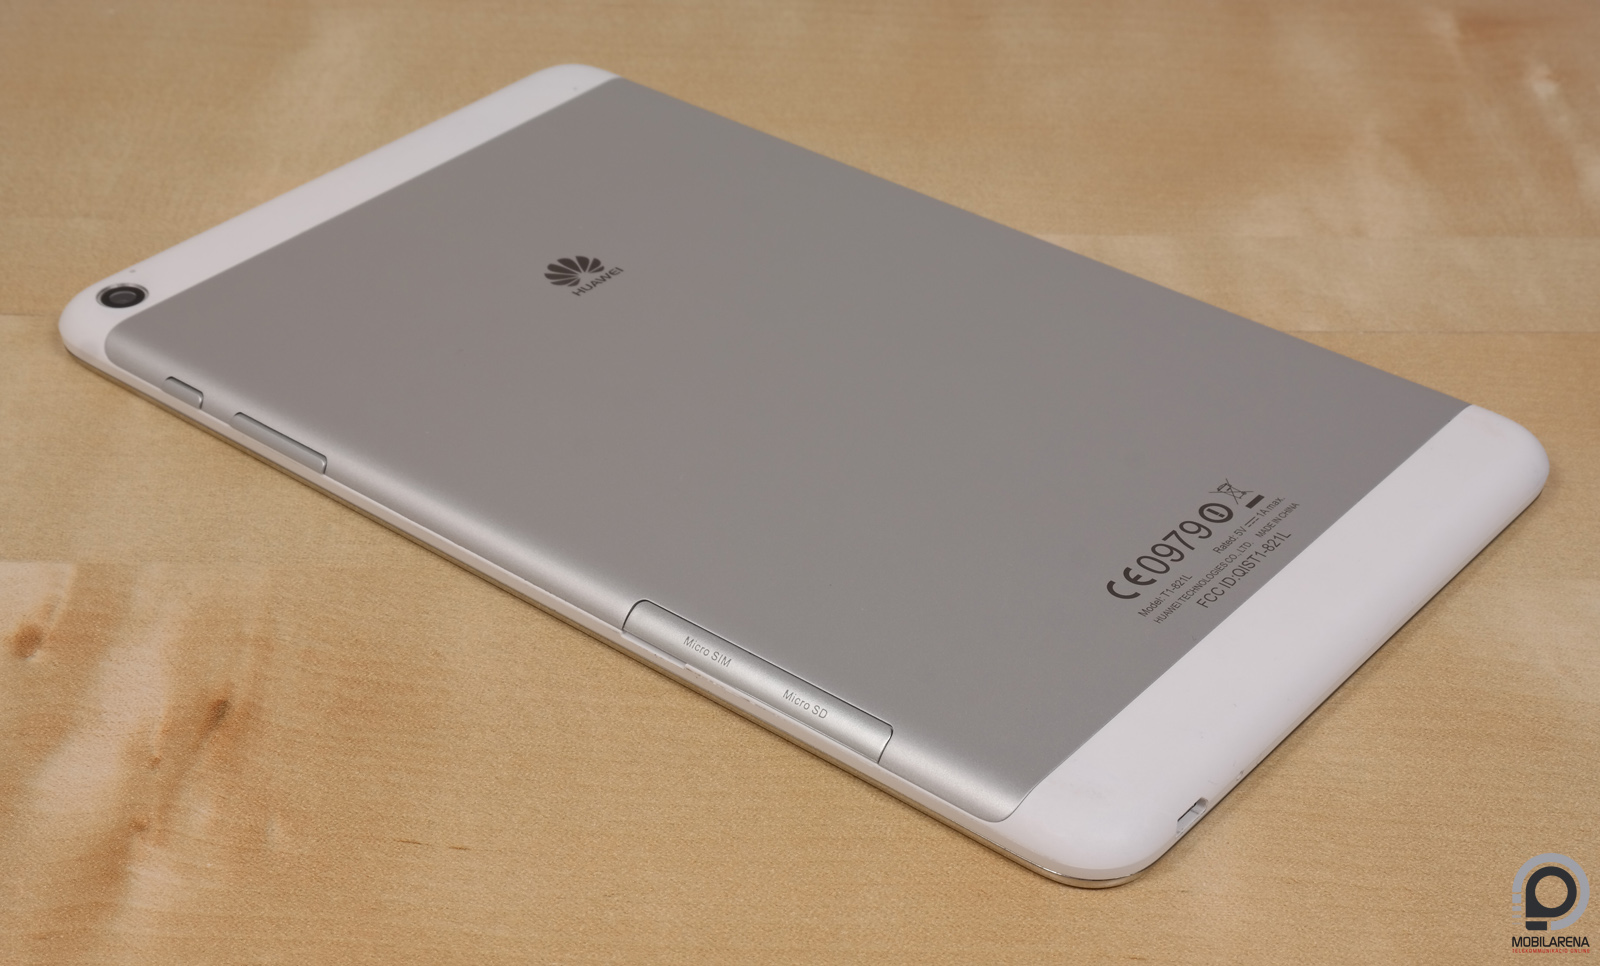 Huawei MediaPad T1 8.0 LTE - 4G négy ezresért - Mobilarena Tablet teszt -  Nyomtatóbarát verzió